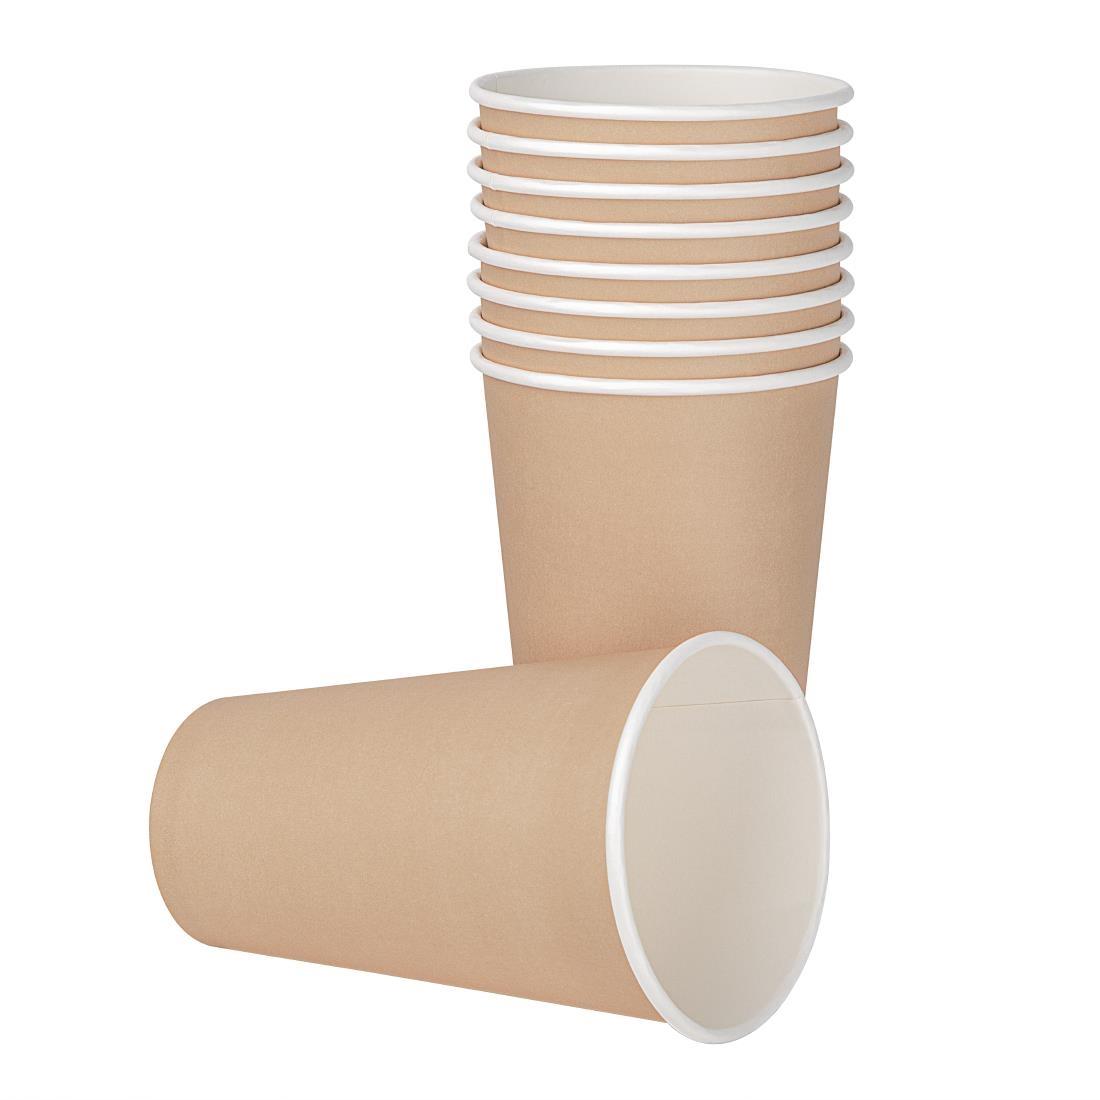 Fiesta Recyclable Single Wall Takeaway Coffee Cups Kraft 455ml / 16oz (Pack of 50) - GF035  - 2